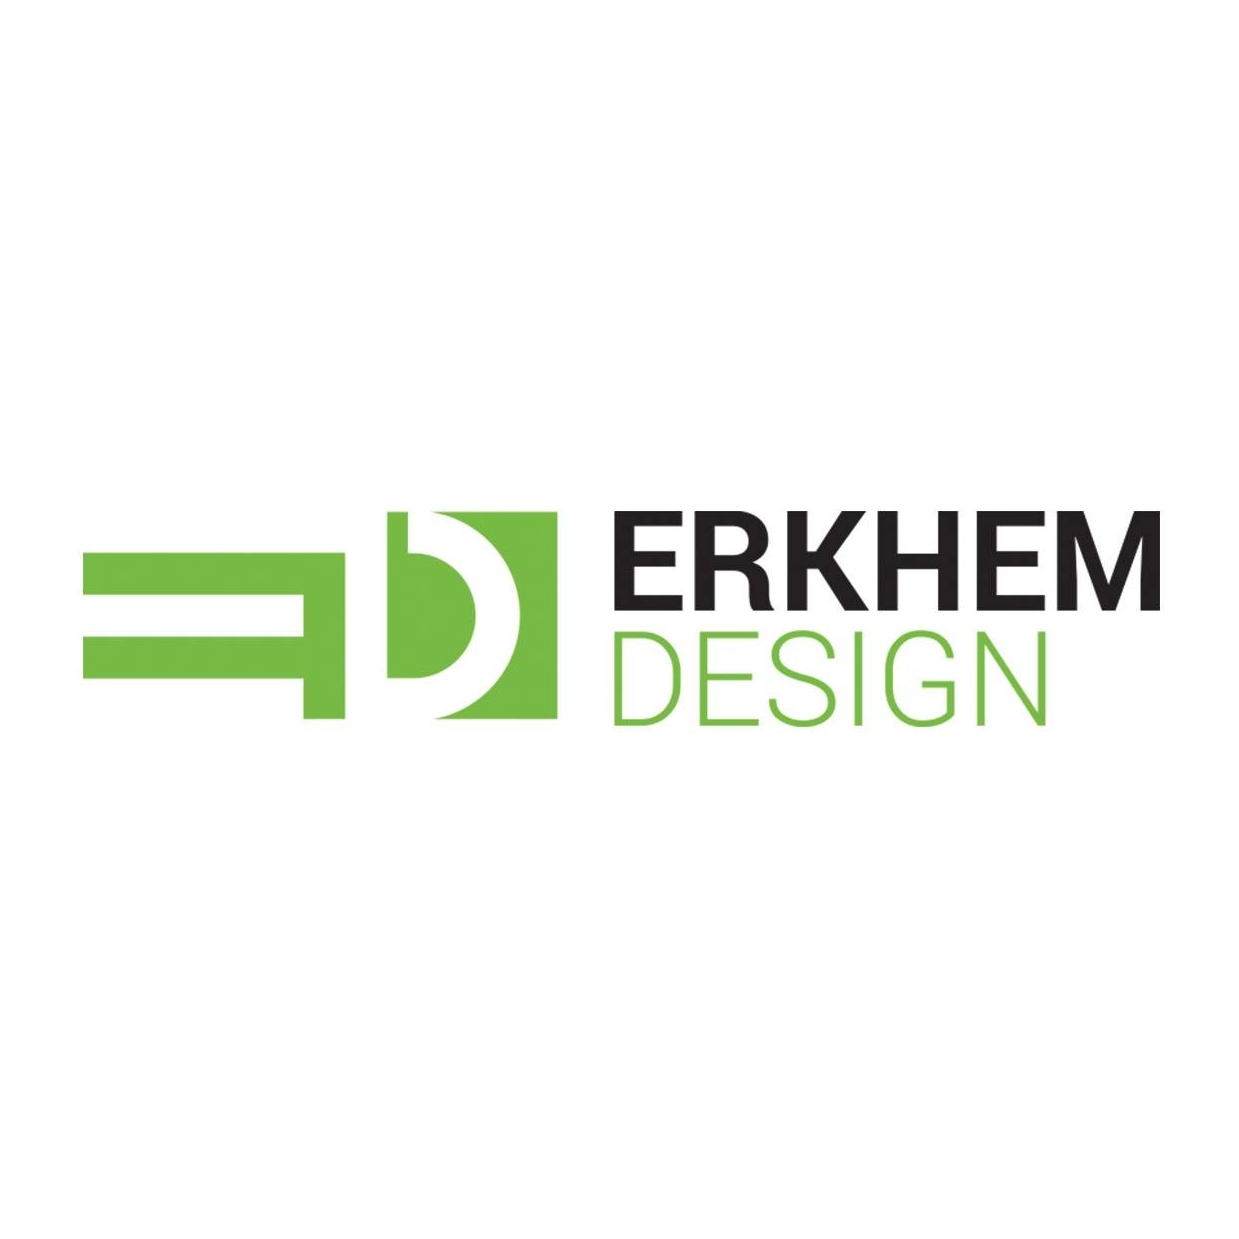 Erkhem design LLC